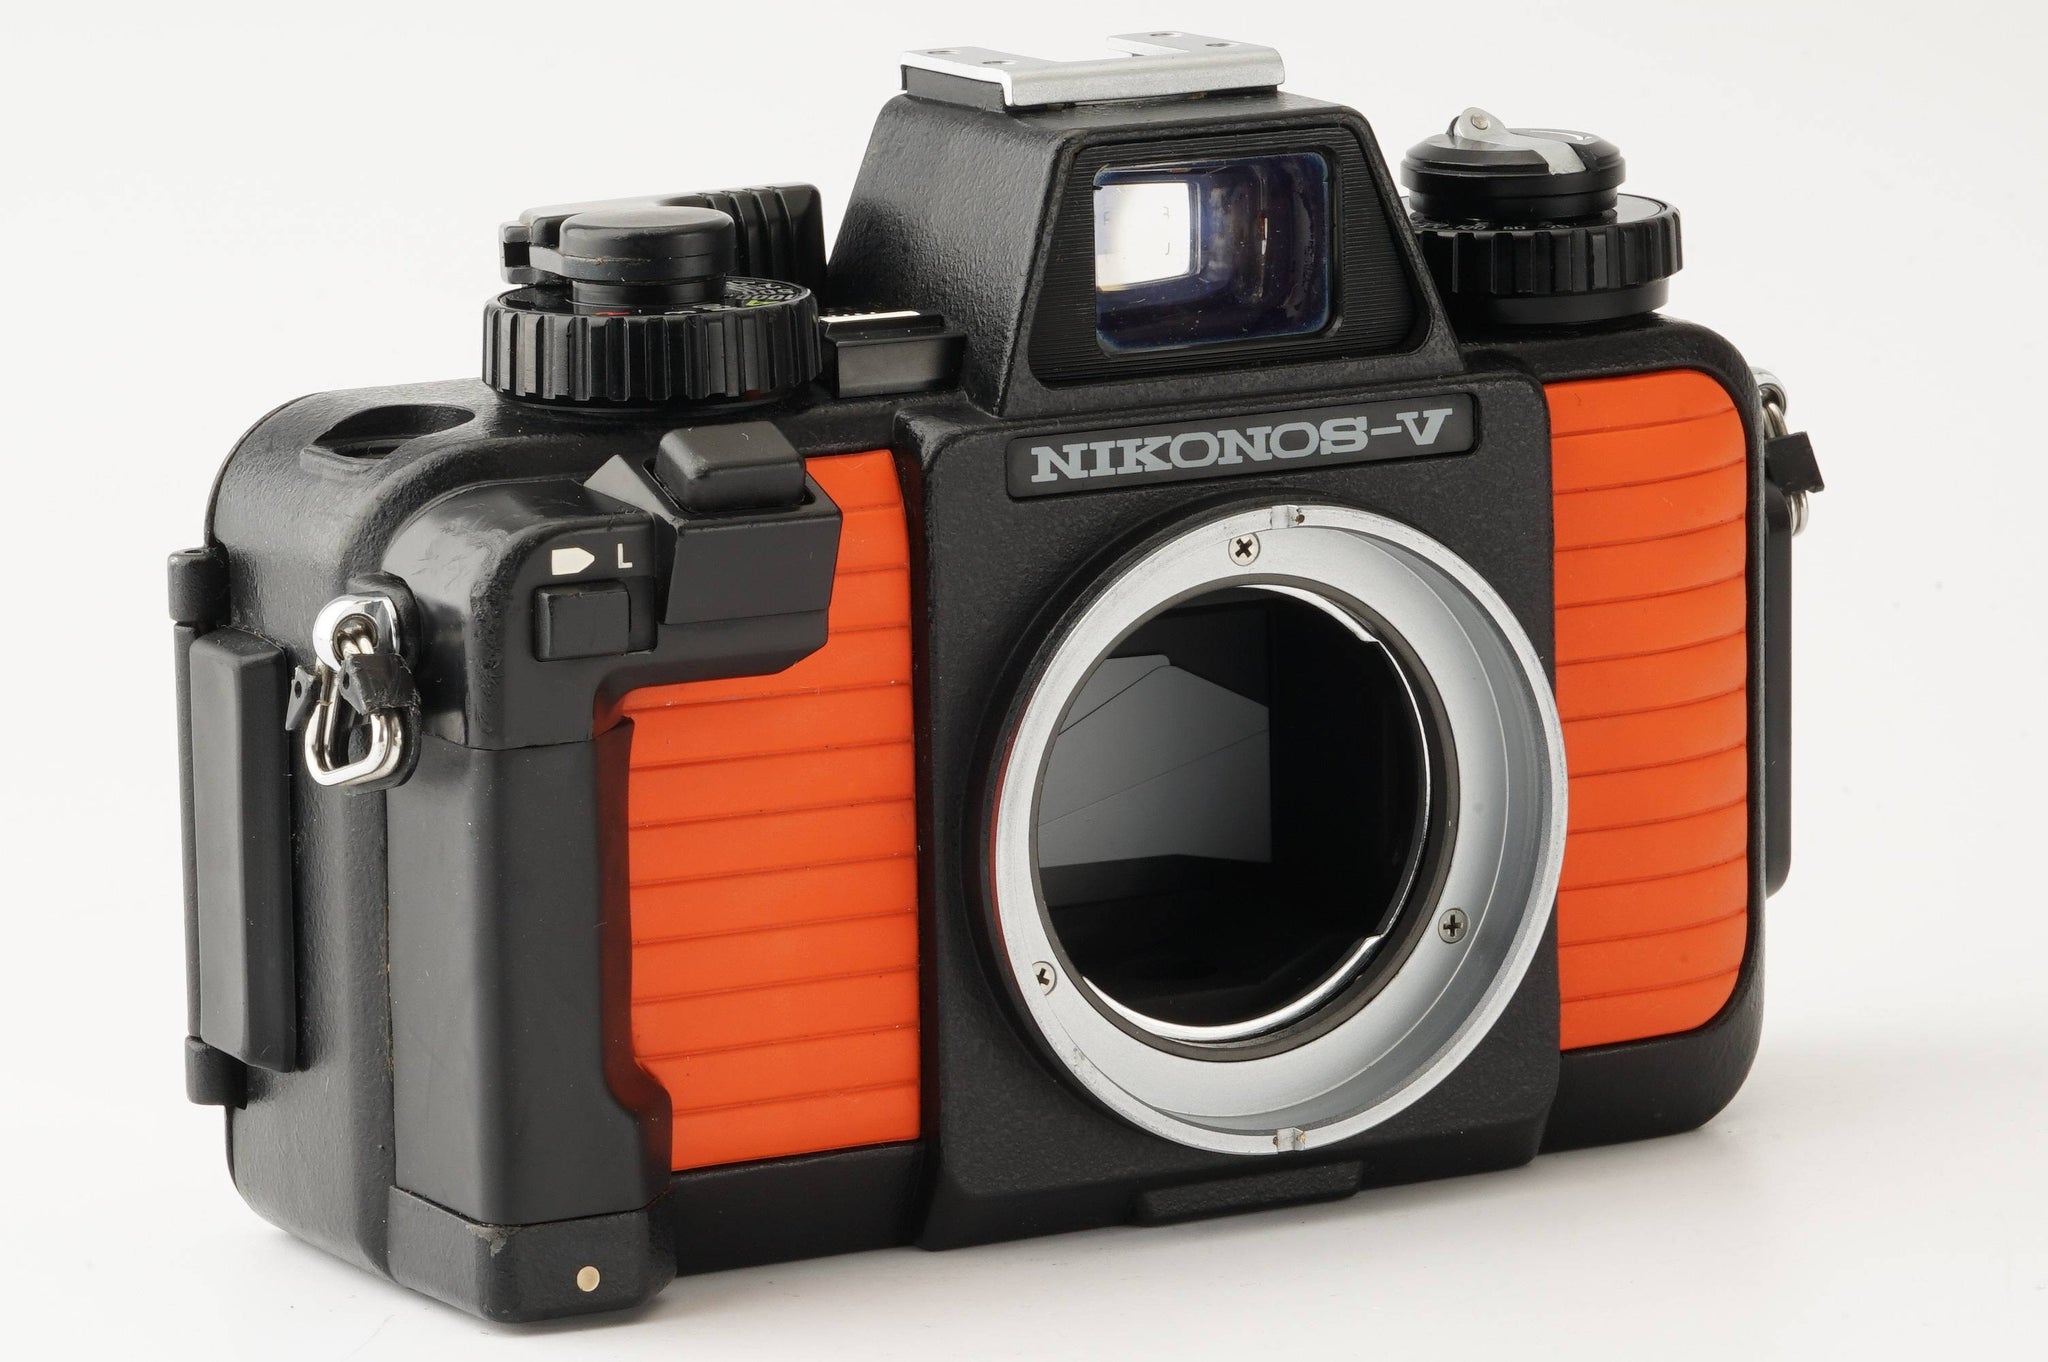 ニコン Nikon NIKONOS V オレンジ / UW-NIKKOR 28mm F3.5 – Natural